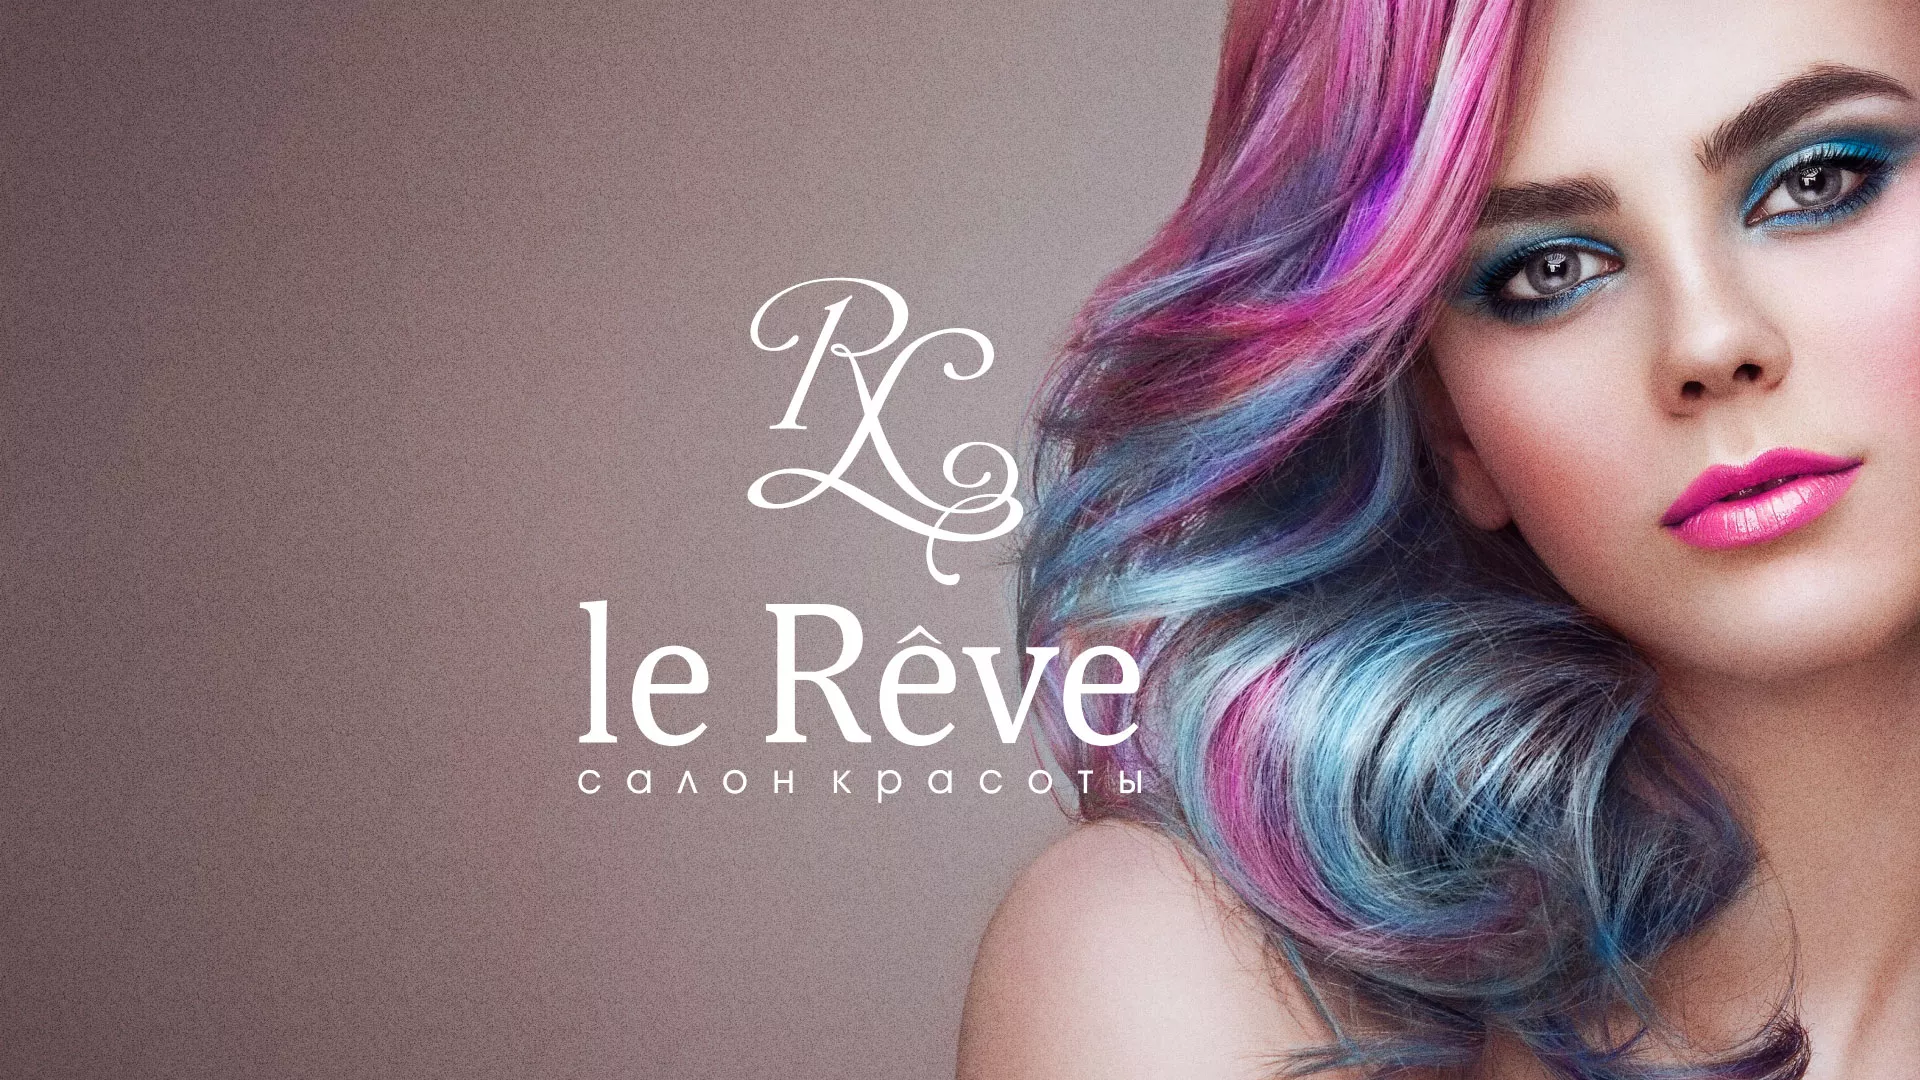 Создание сайта для салона красоты «Le Reve» в Томске